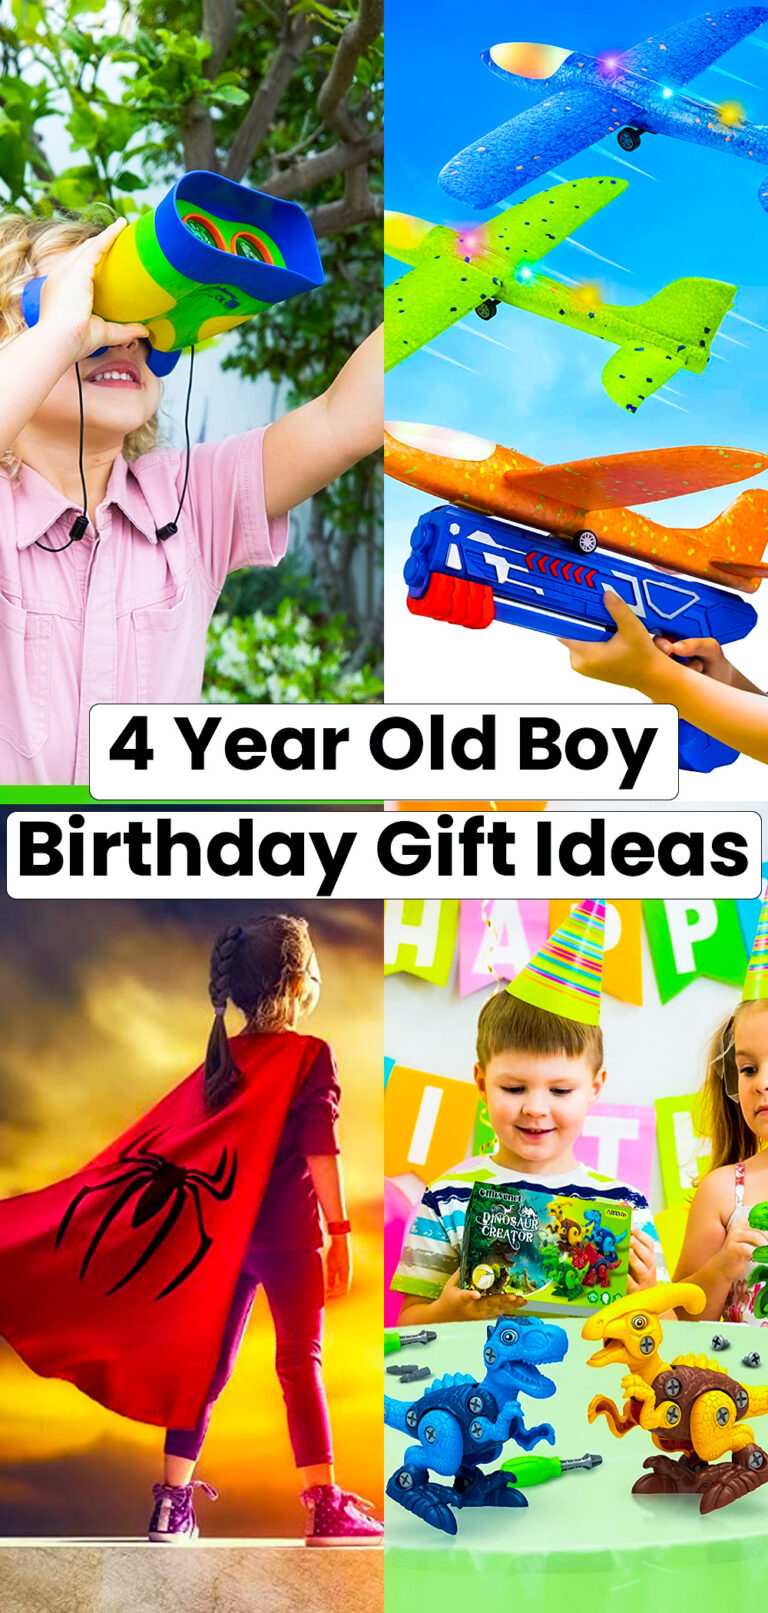 4 Year Old Boy Birthday Gift Ideas